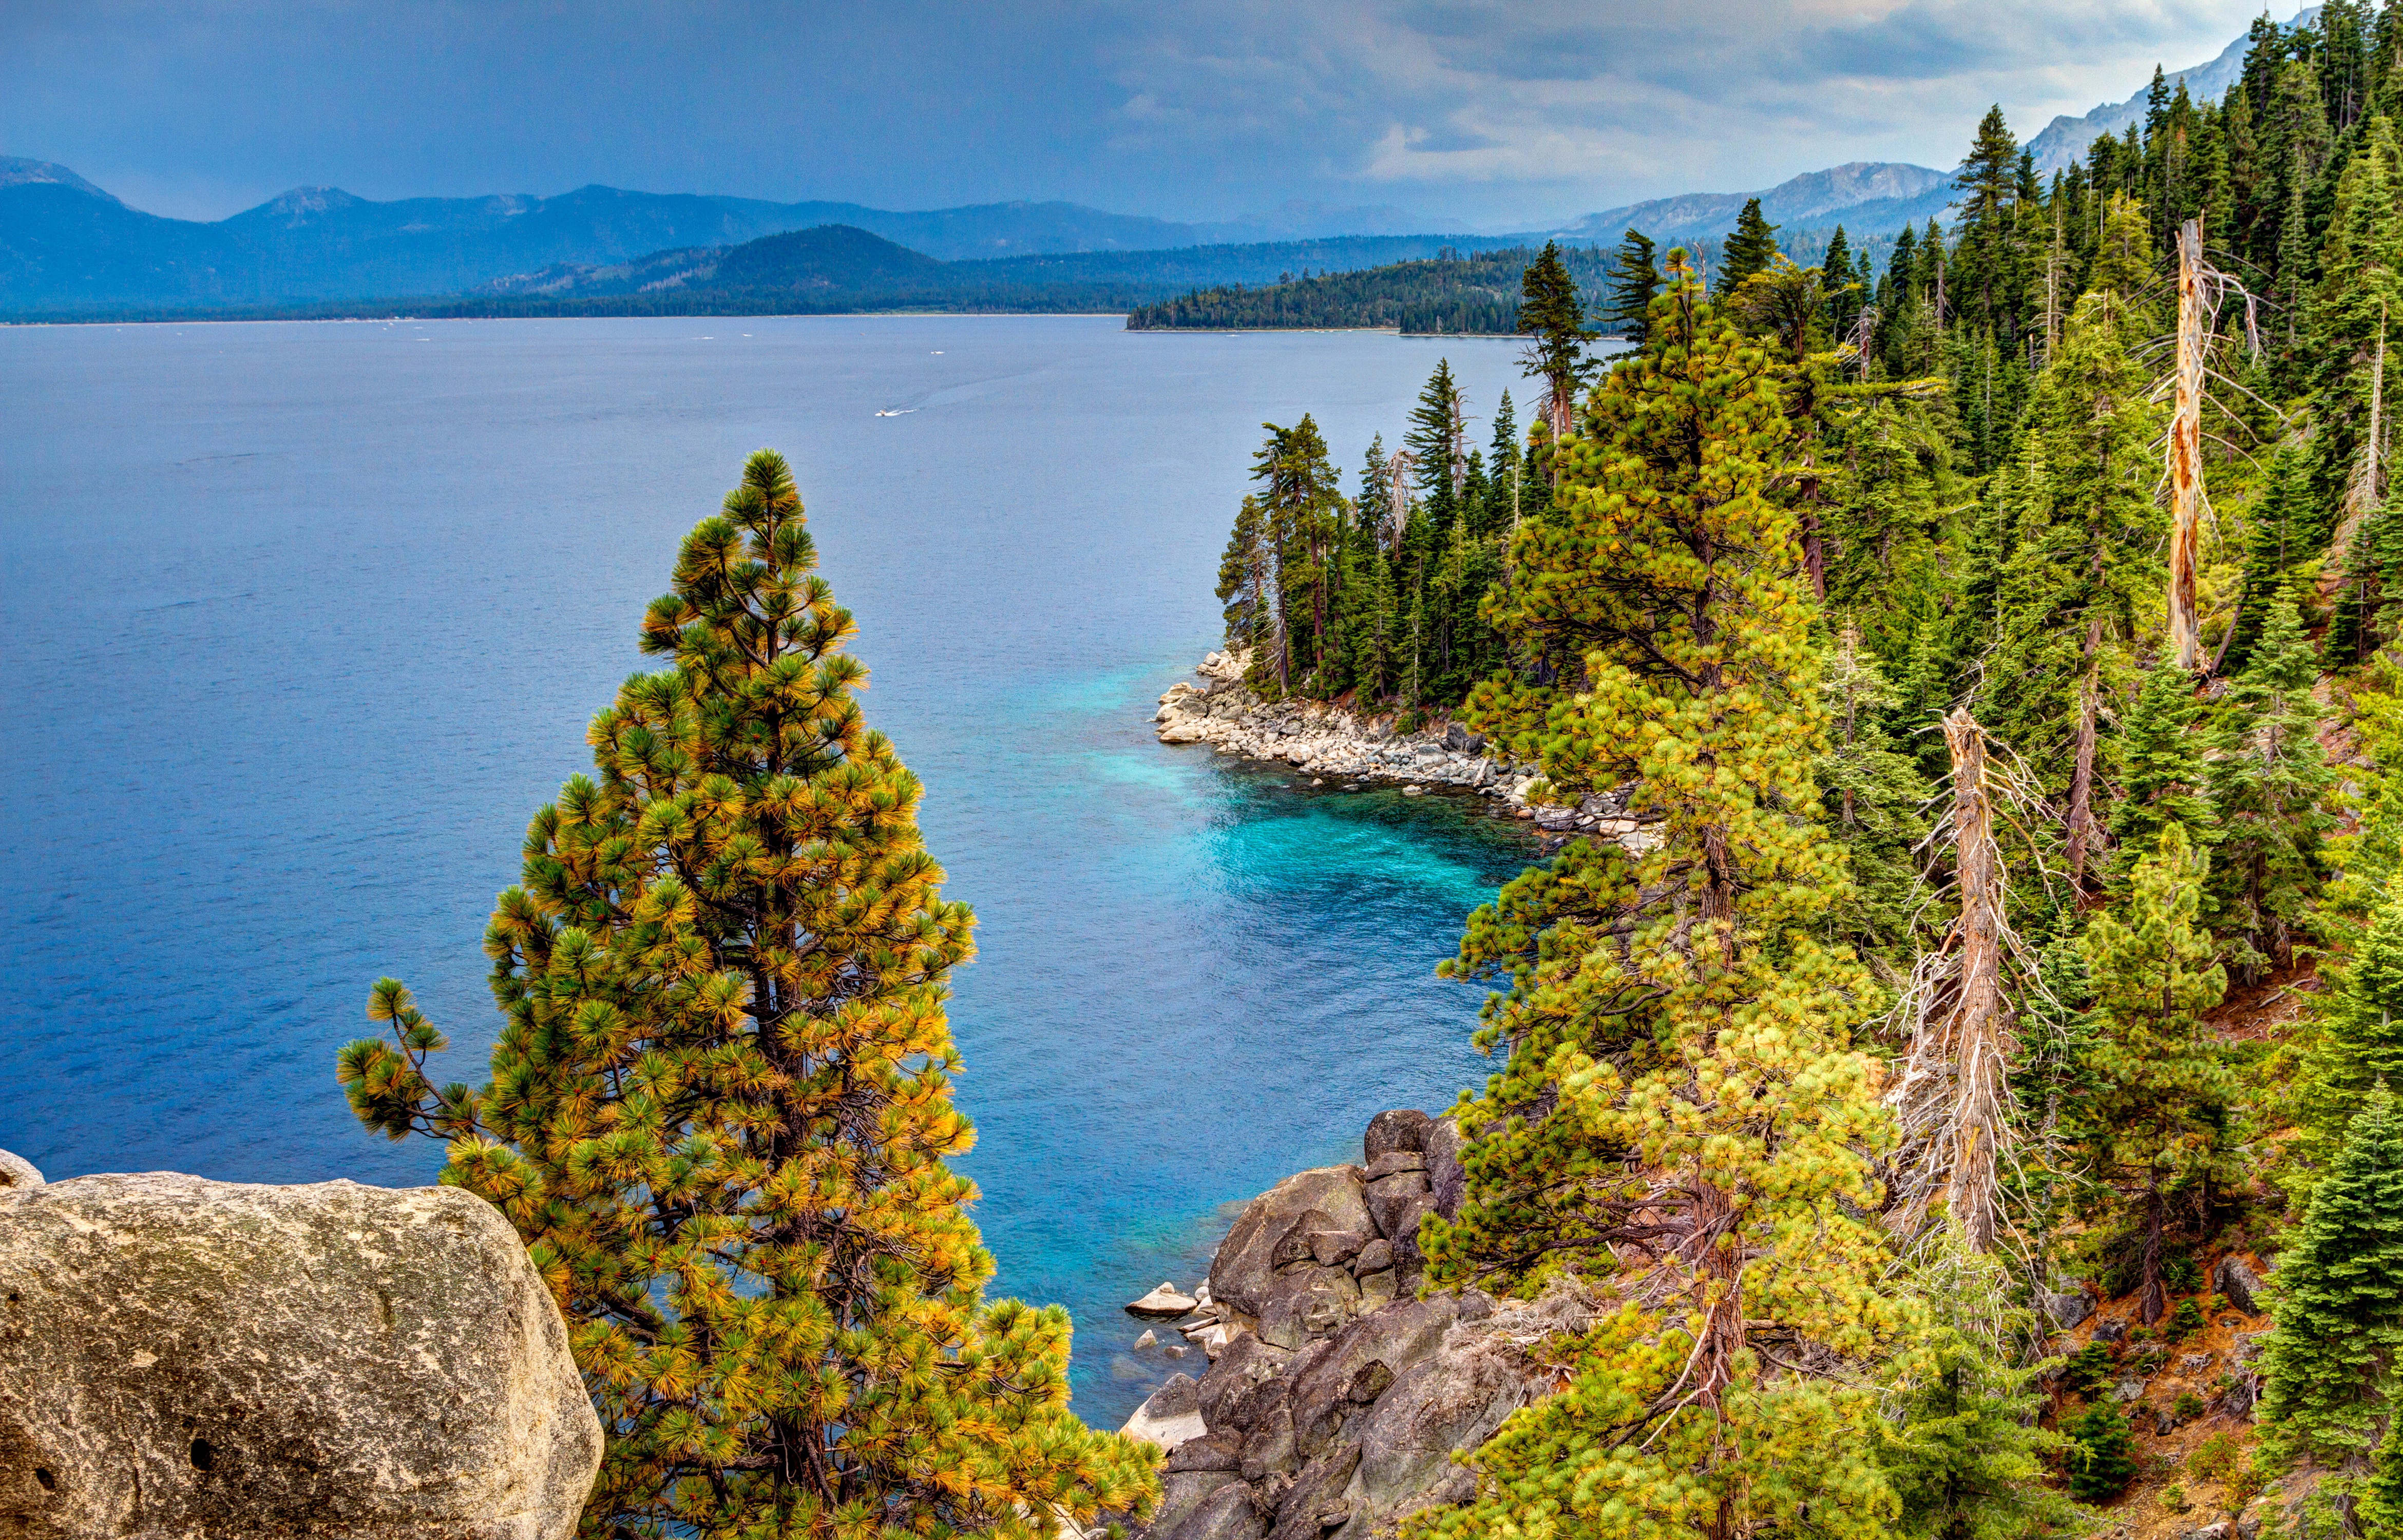 Bức ảnh nền siêu nét về hồ Tahoe này sẽ khiến bạn bị mê hoặc bởi vẻ đẹp tuyệt vời của thiên nhiên. Với nước trong xanh, núi non đồi núi quanh hồ và ánh sáng mặt trời chiếu sáng đủ để tạo ra một bức tranh thật sống động và hoàn hảo nhất. Tải xuống ngay để có bức ảnh nền không thể tuyệt vời hơn này!